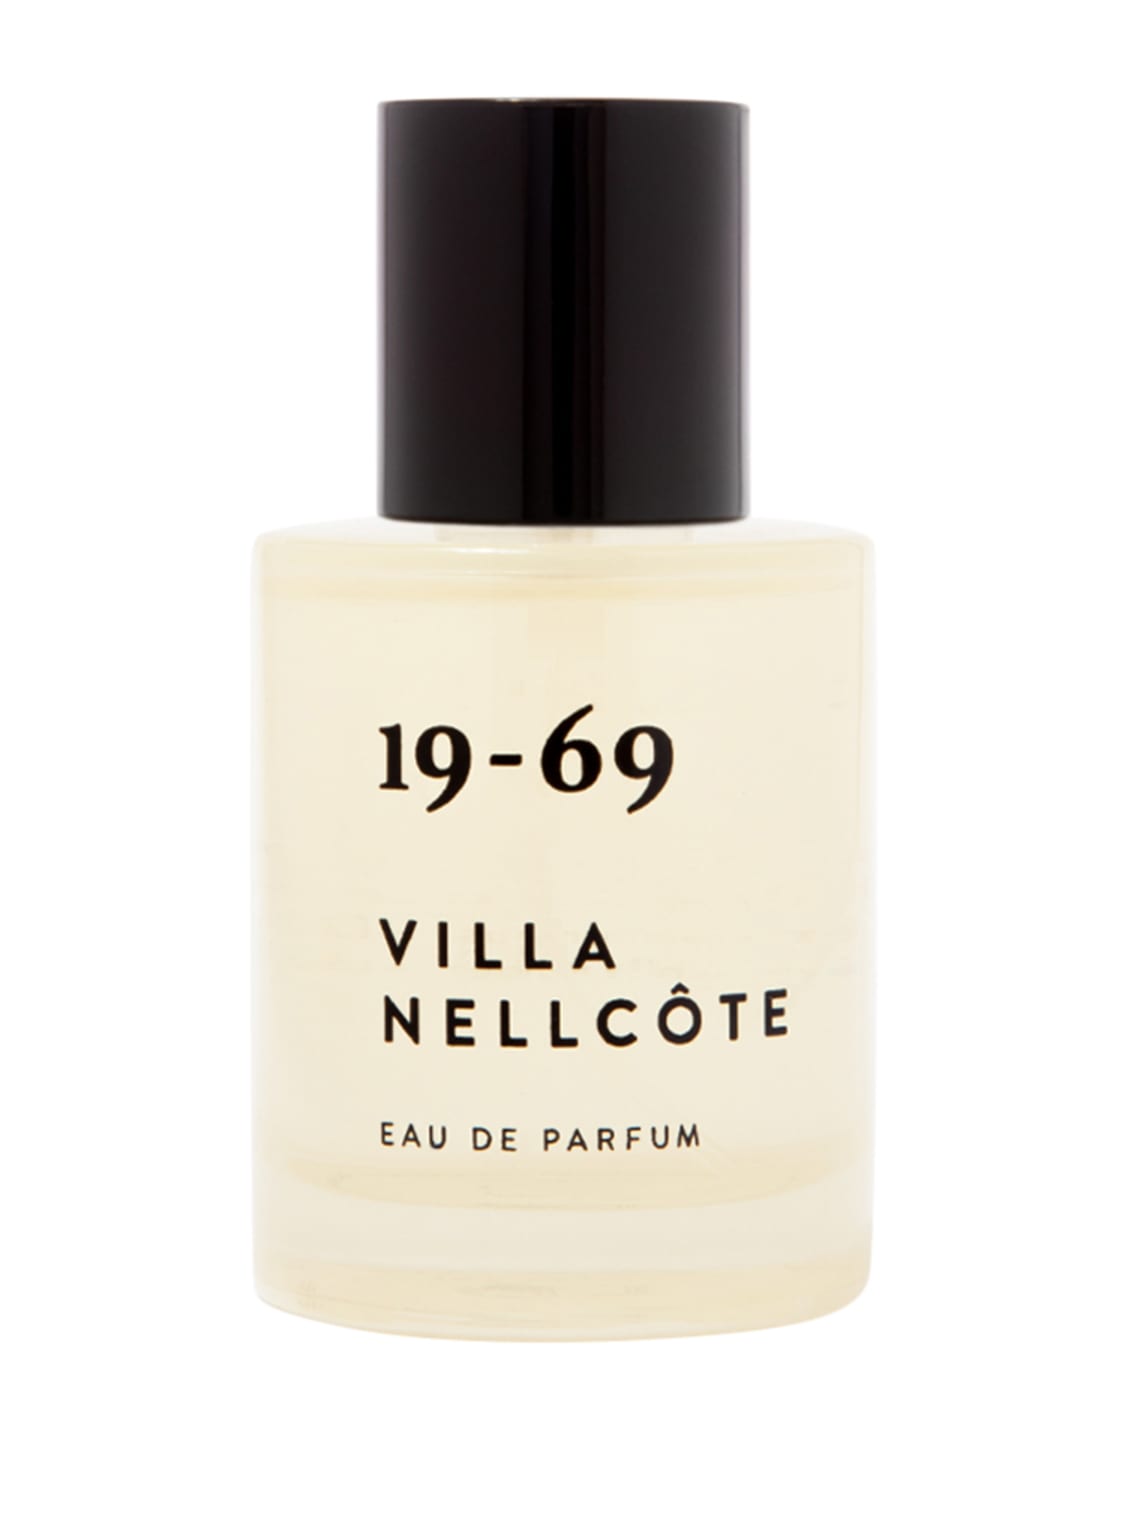 Image of 19-69 Fragrances Villa Nellcote Eau de Parfum 30 ml